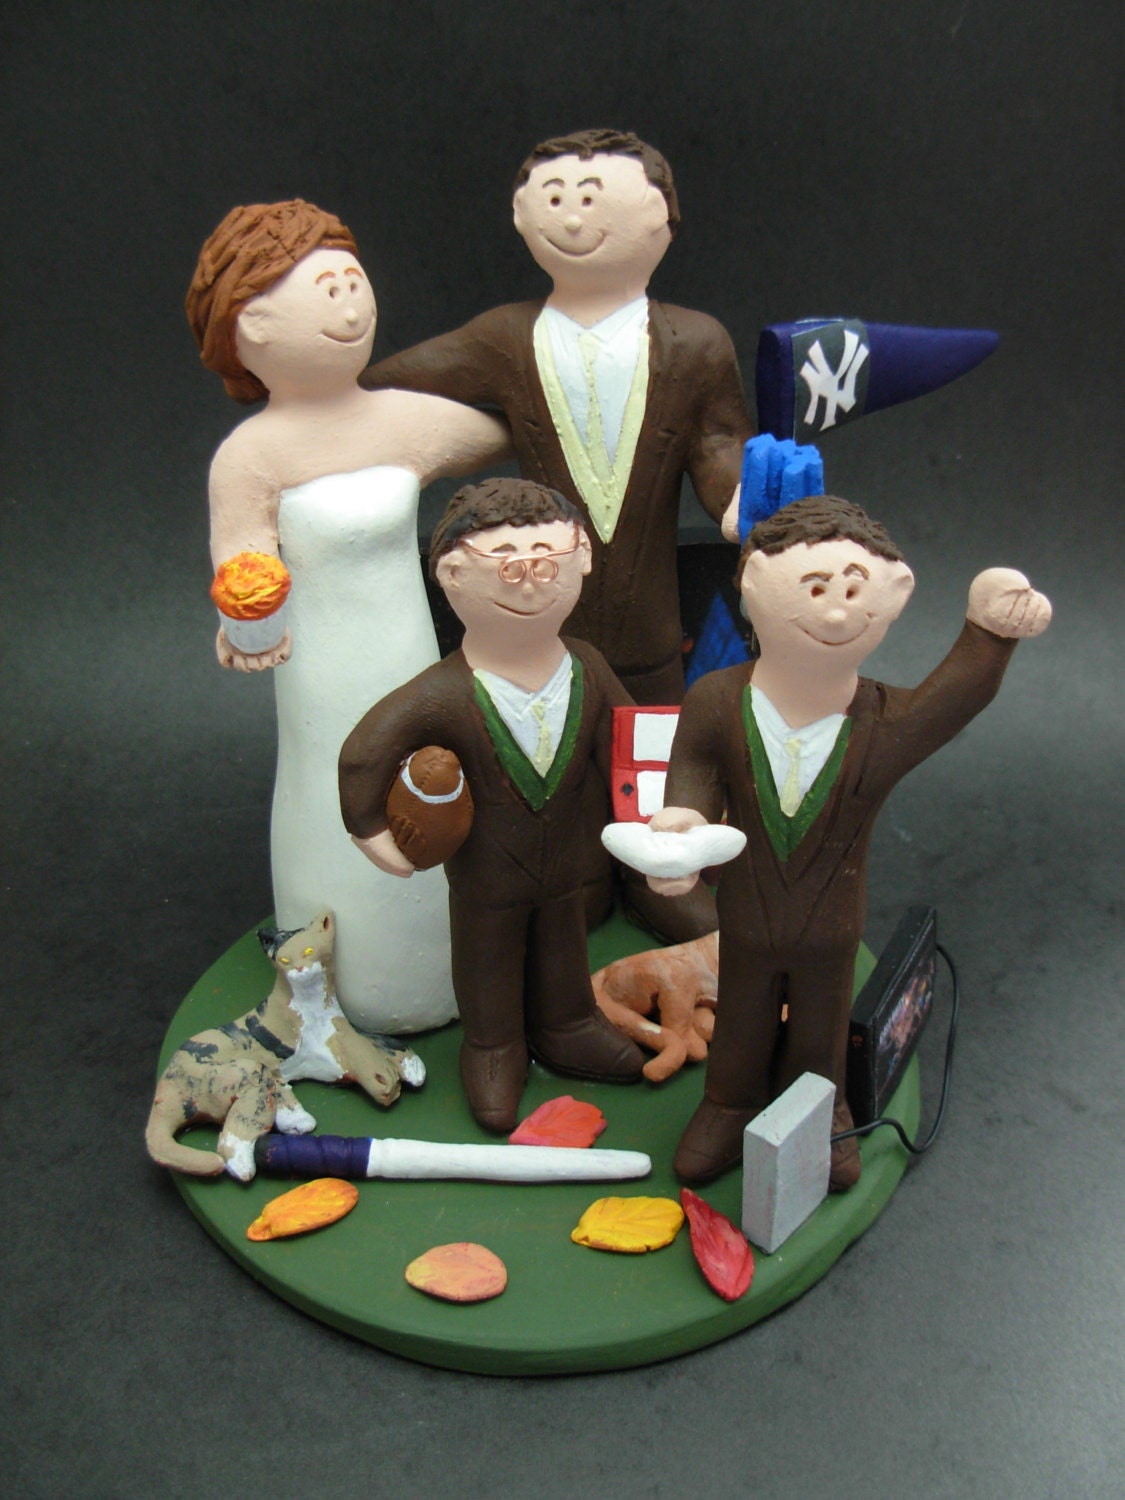 Family Cake Toppers, Custom Made Blended Family Wedding Cake Topper - Mixed Family Wedding Cake Topper - Two Family Wedding Cake Topper